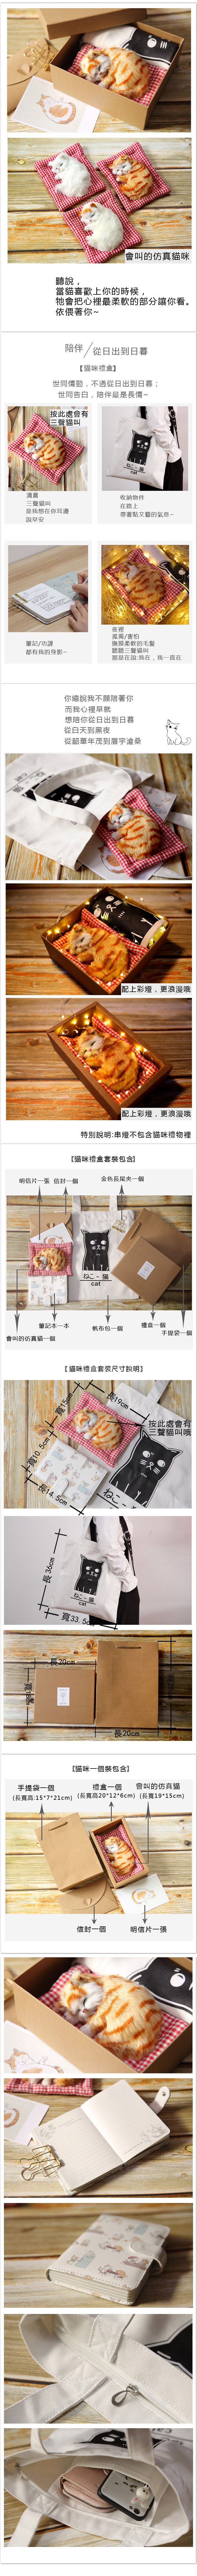 創意小物館 可愛仿真貓咪套裝禮盒 白貓